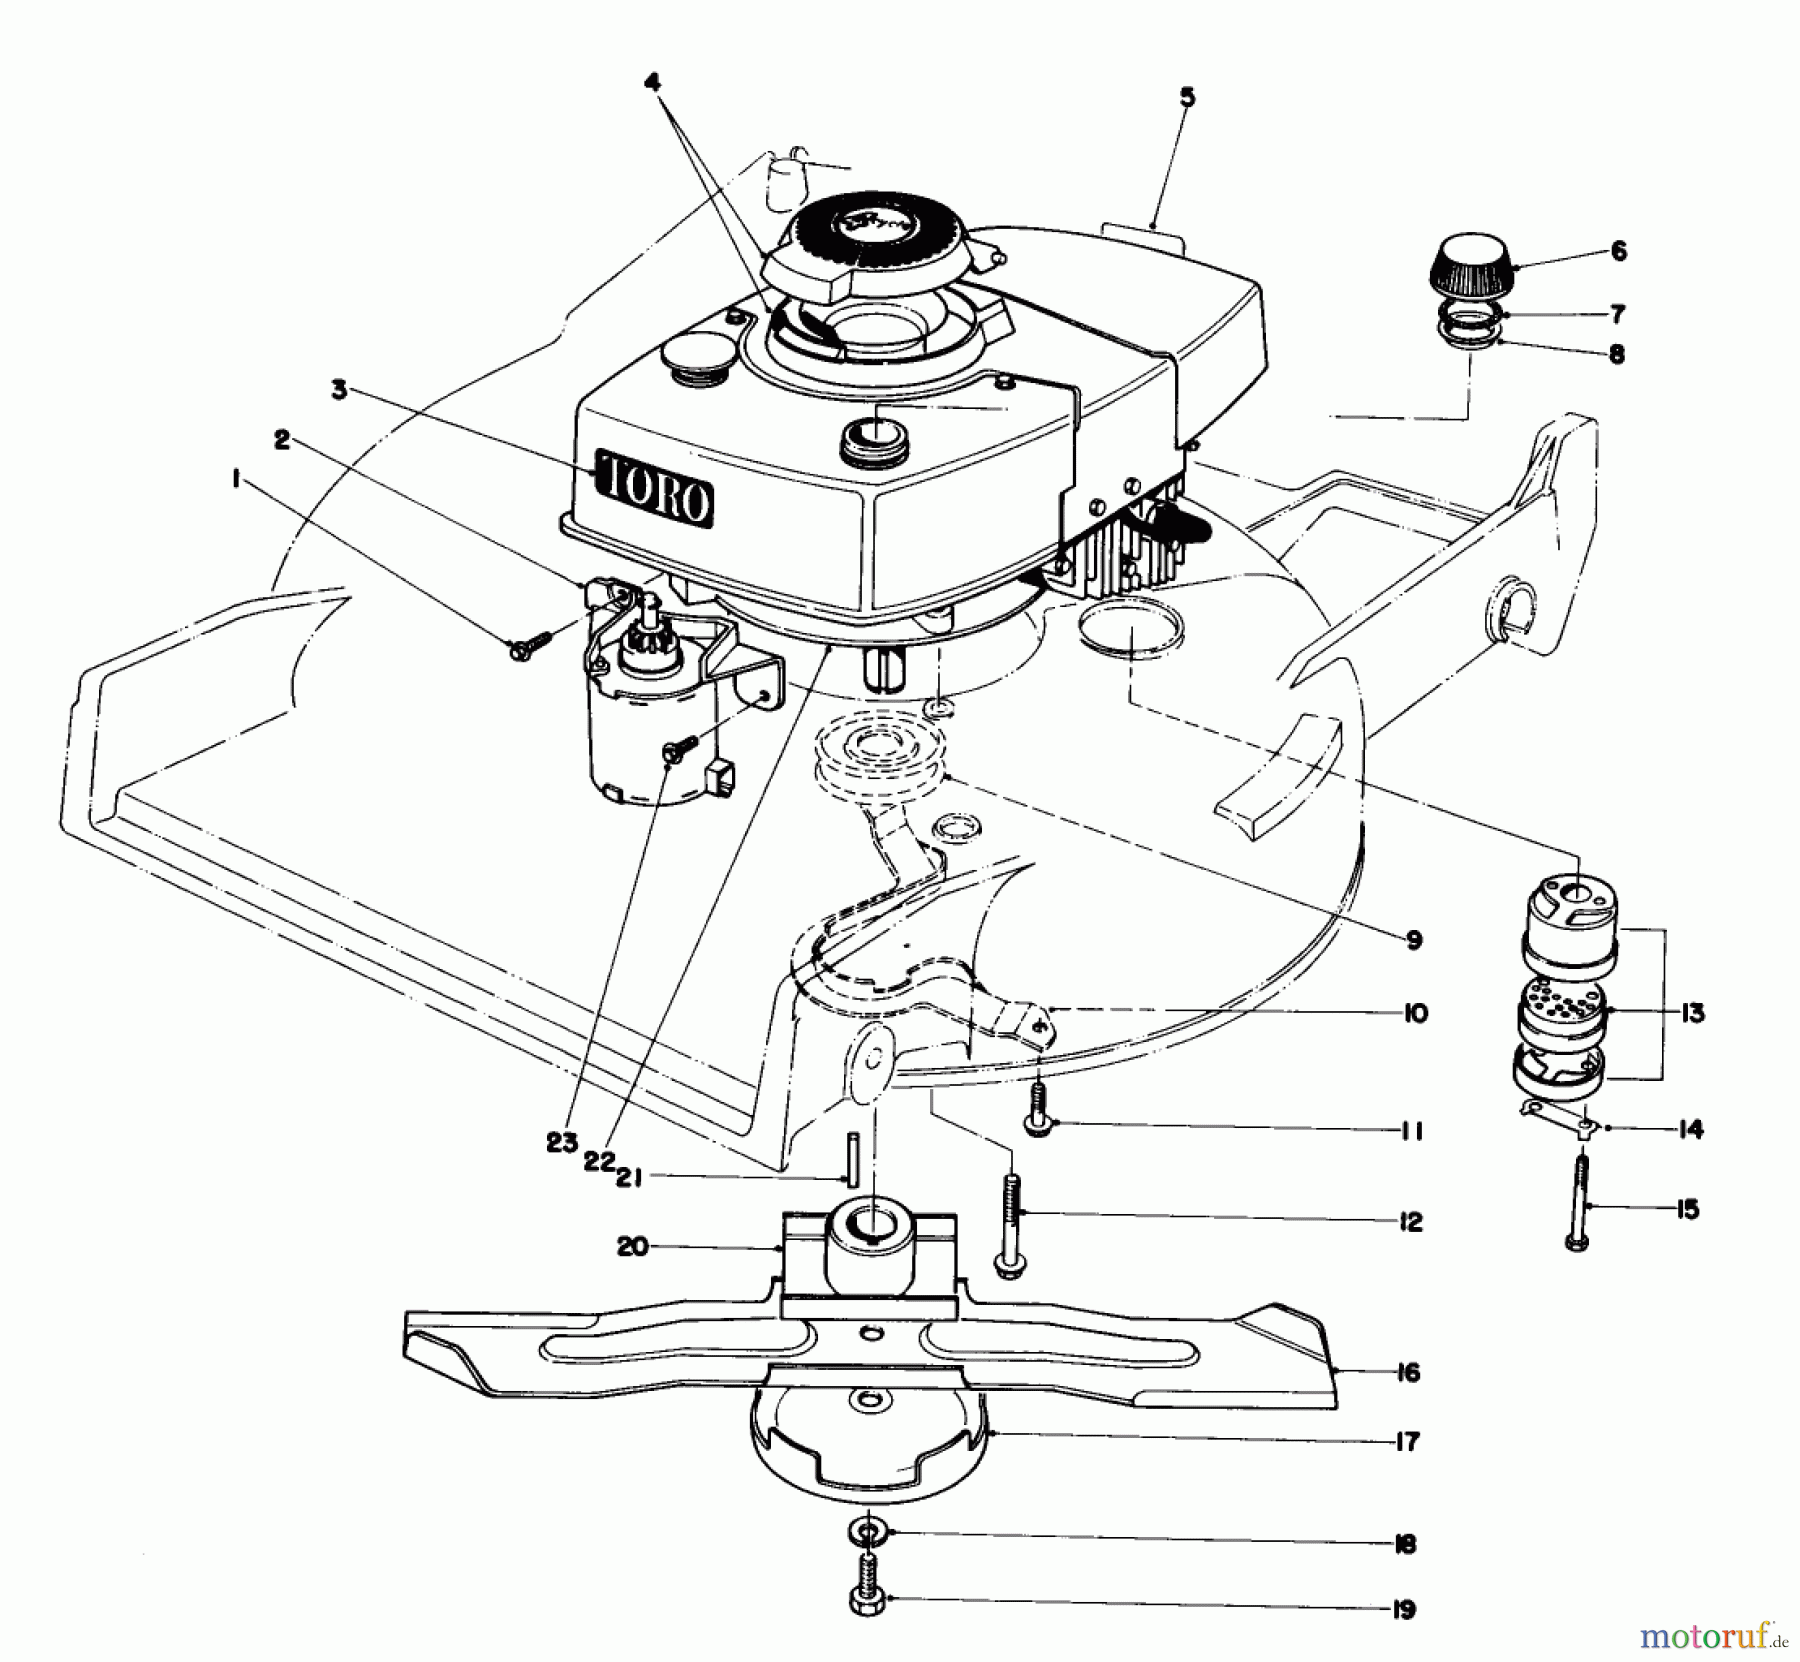  Toro Neu Mowers, Walk-Behind Seite 1 20720 - Toro Lawnmower, 1981 (1000001-1999999) ENGINE ASSEMBLY